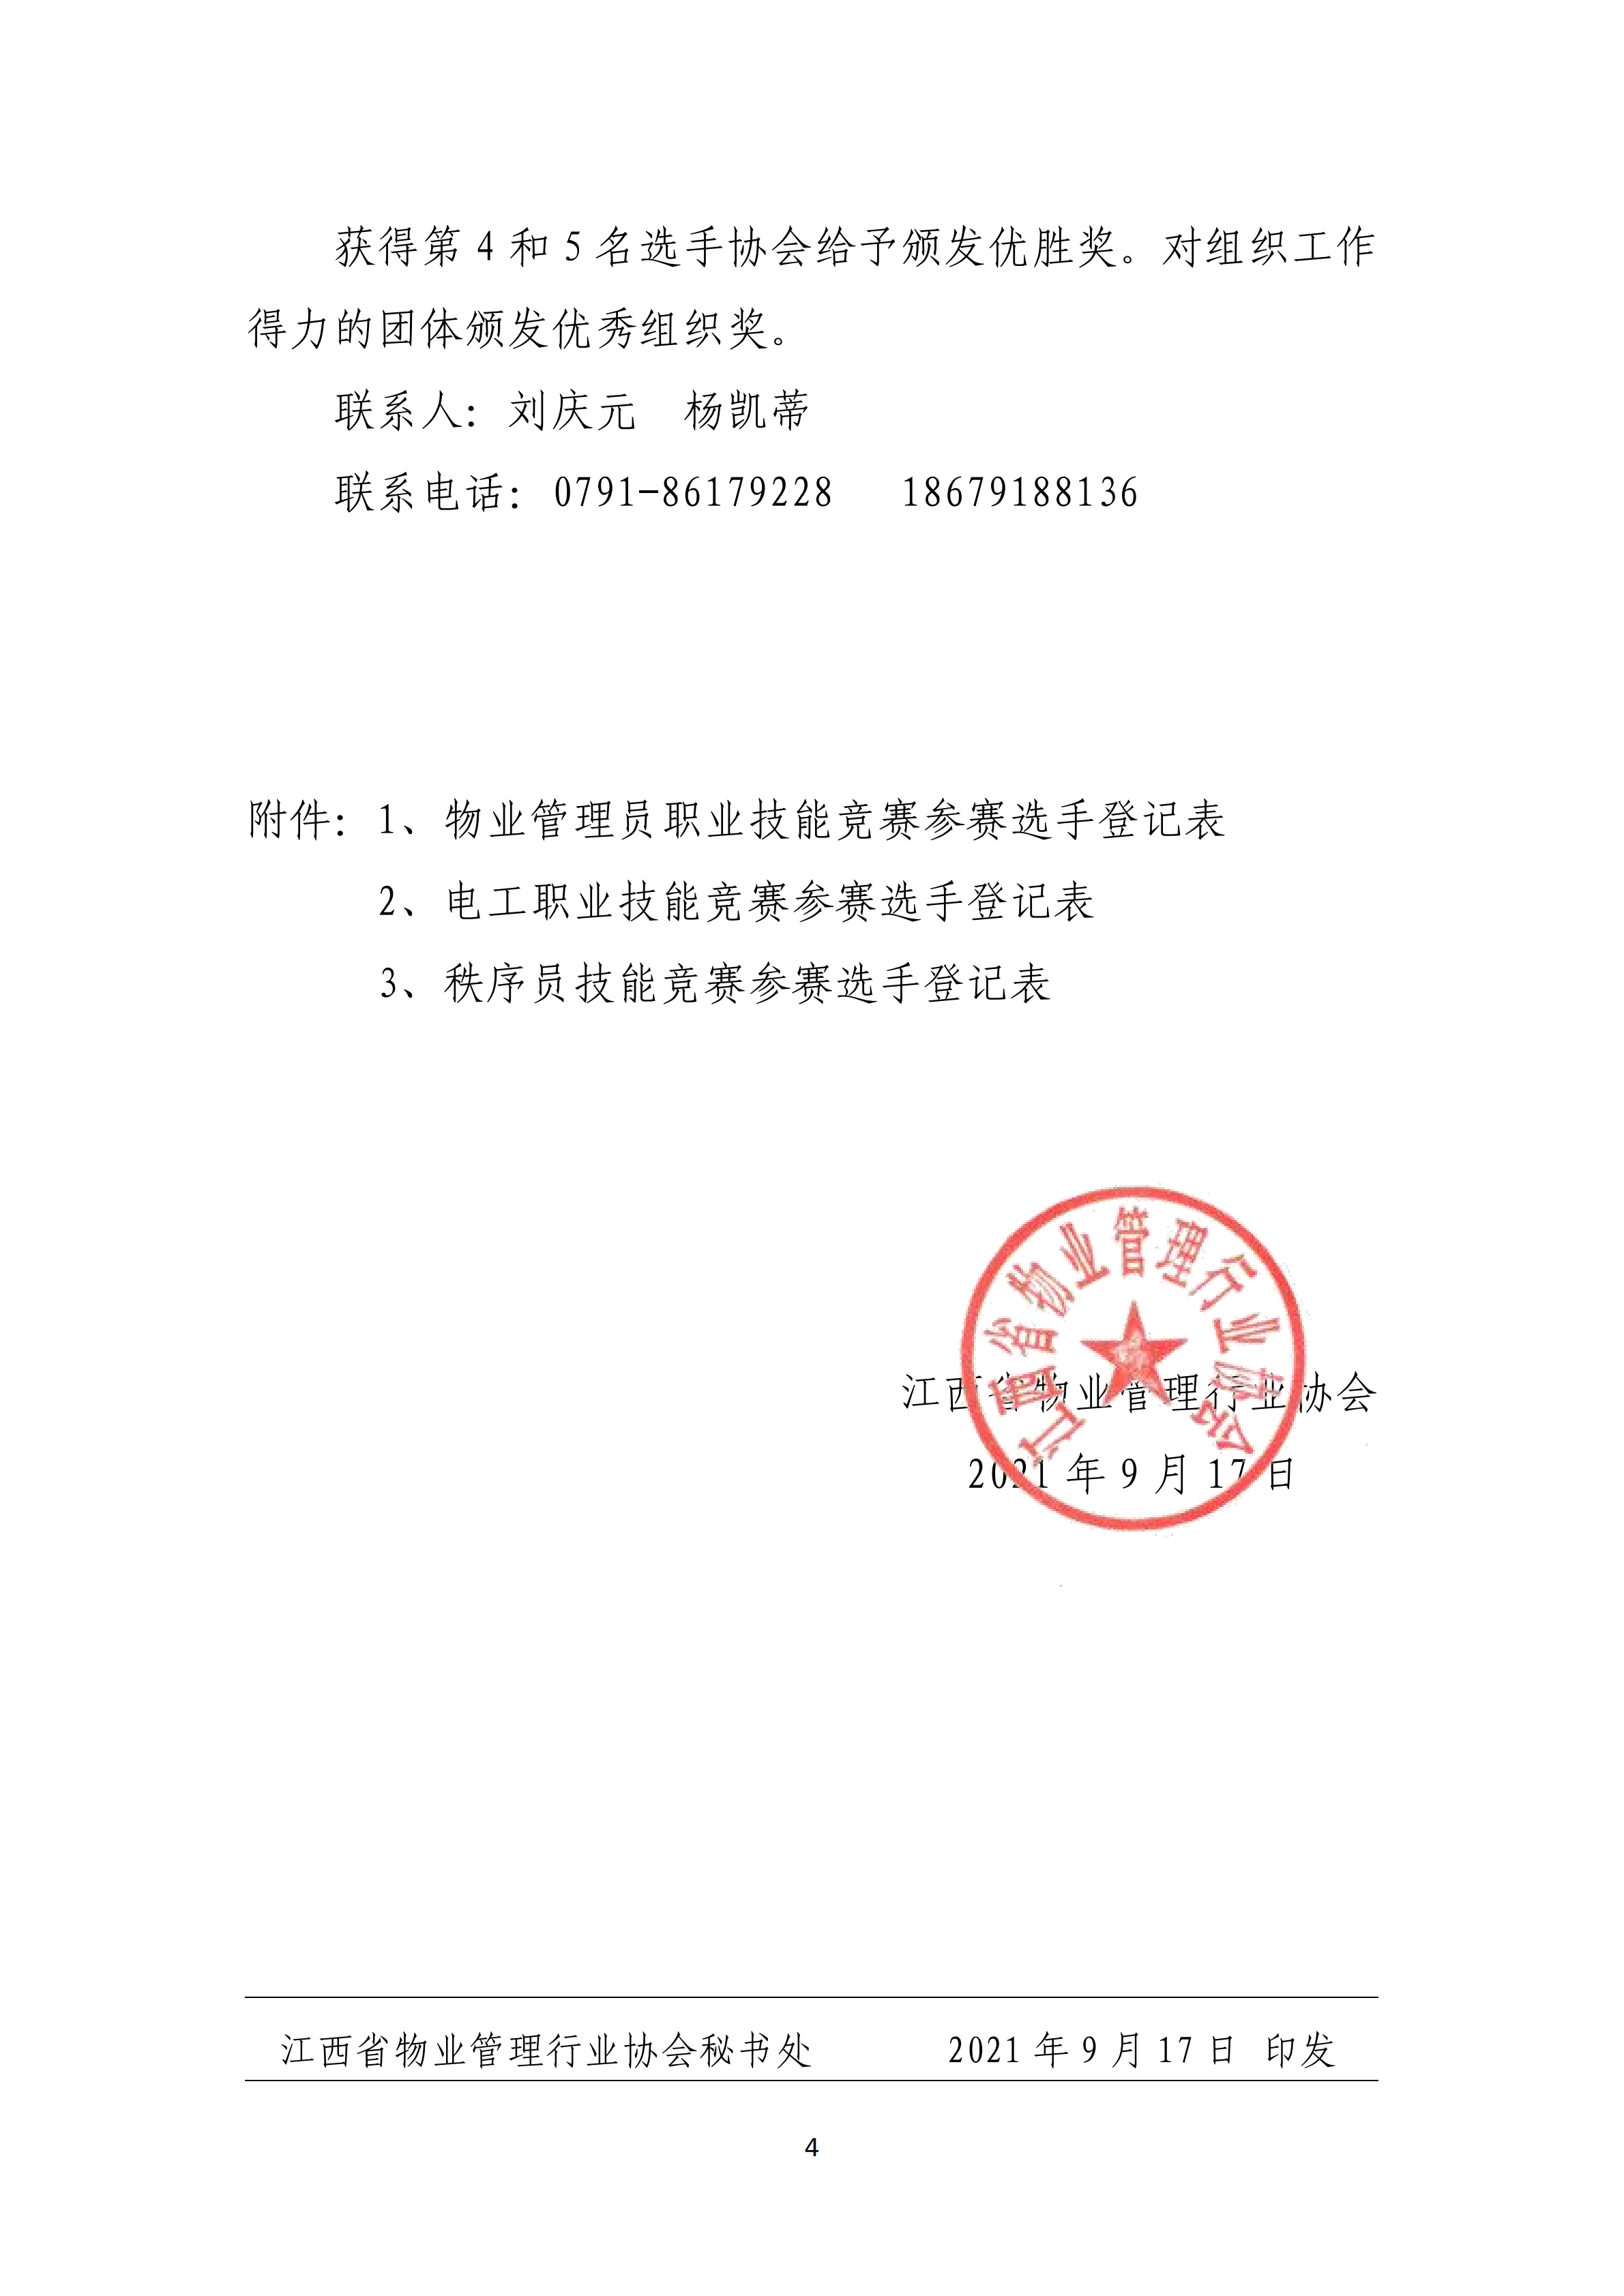 关于举办2021年江西省物业管理行业职业技能竞赛的预通知(赣物协【2021】7号)(5)_03.png